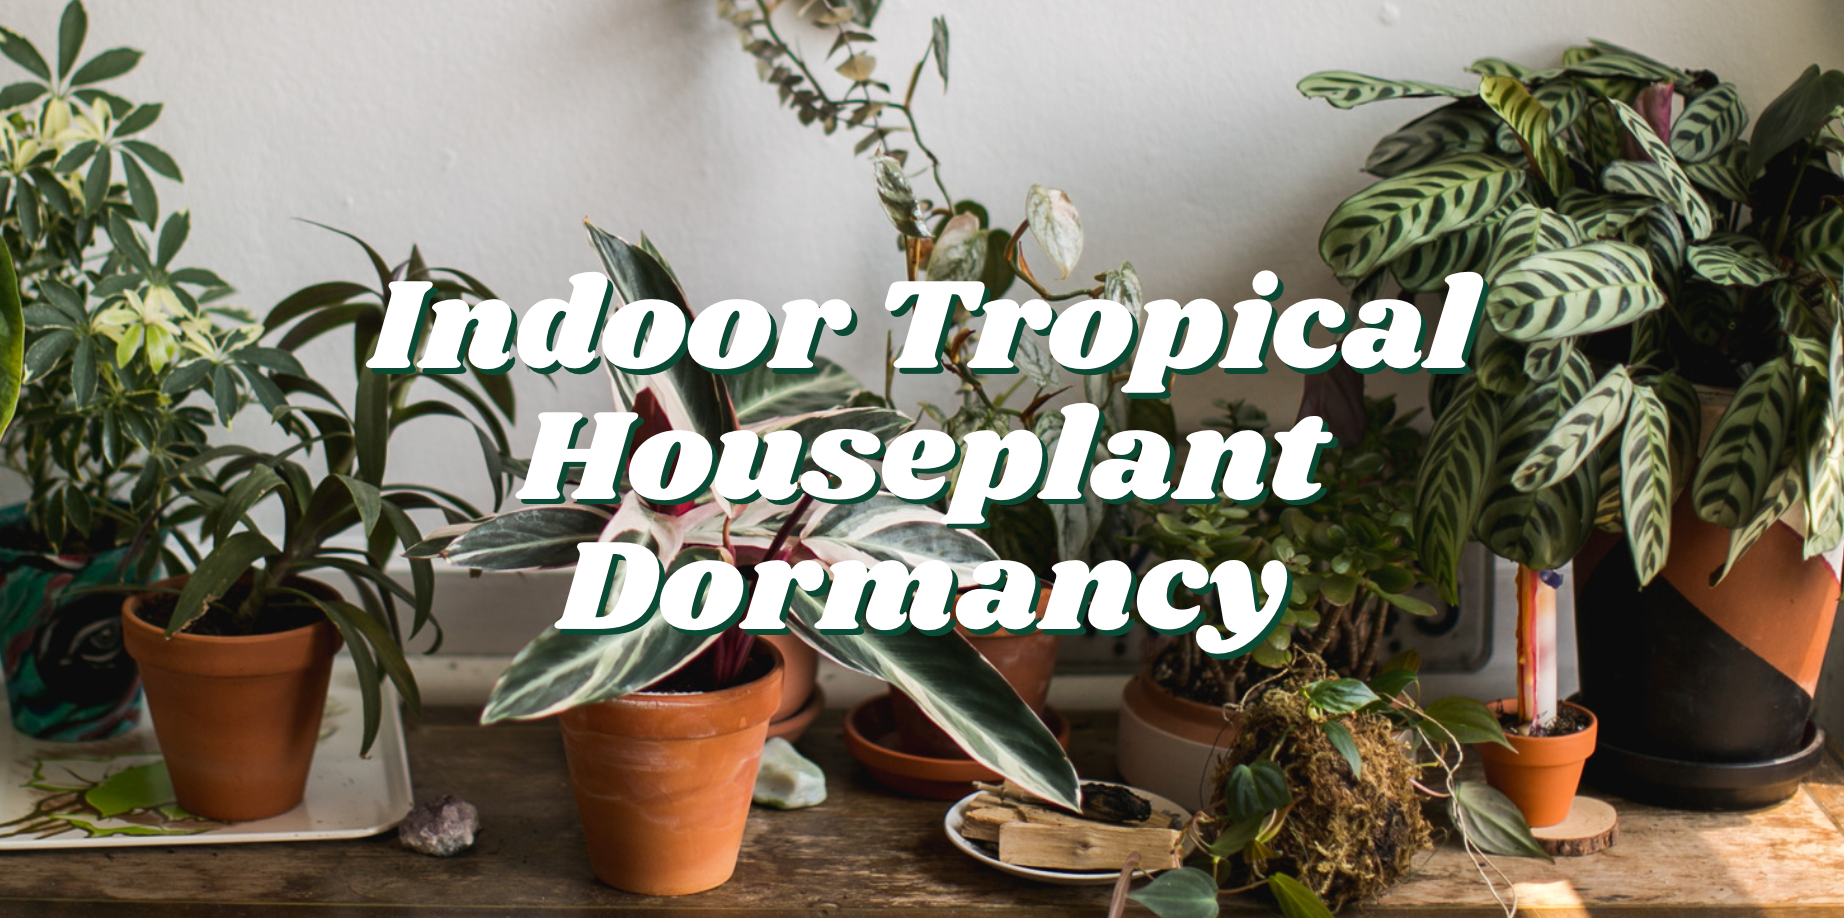 Indoor Tropical Houseplant Dormancy